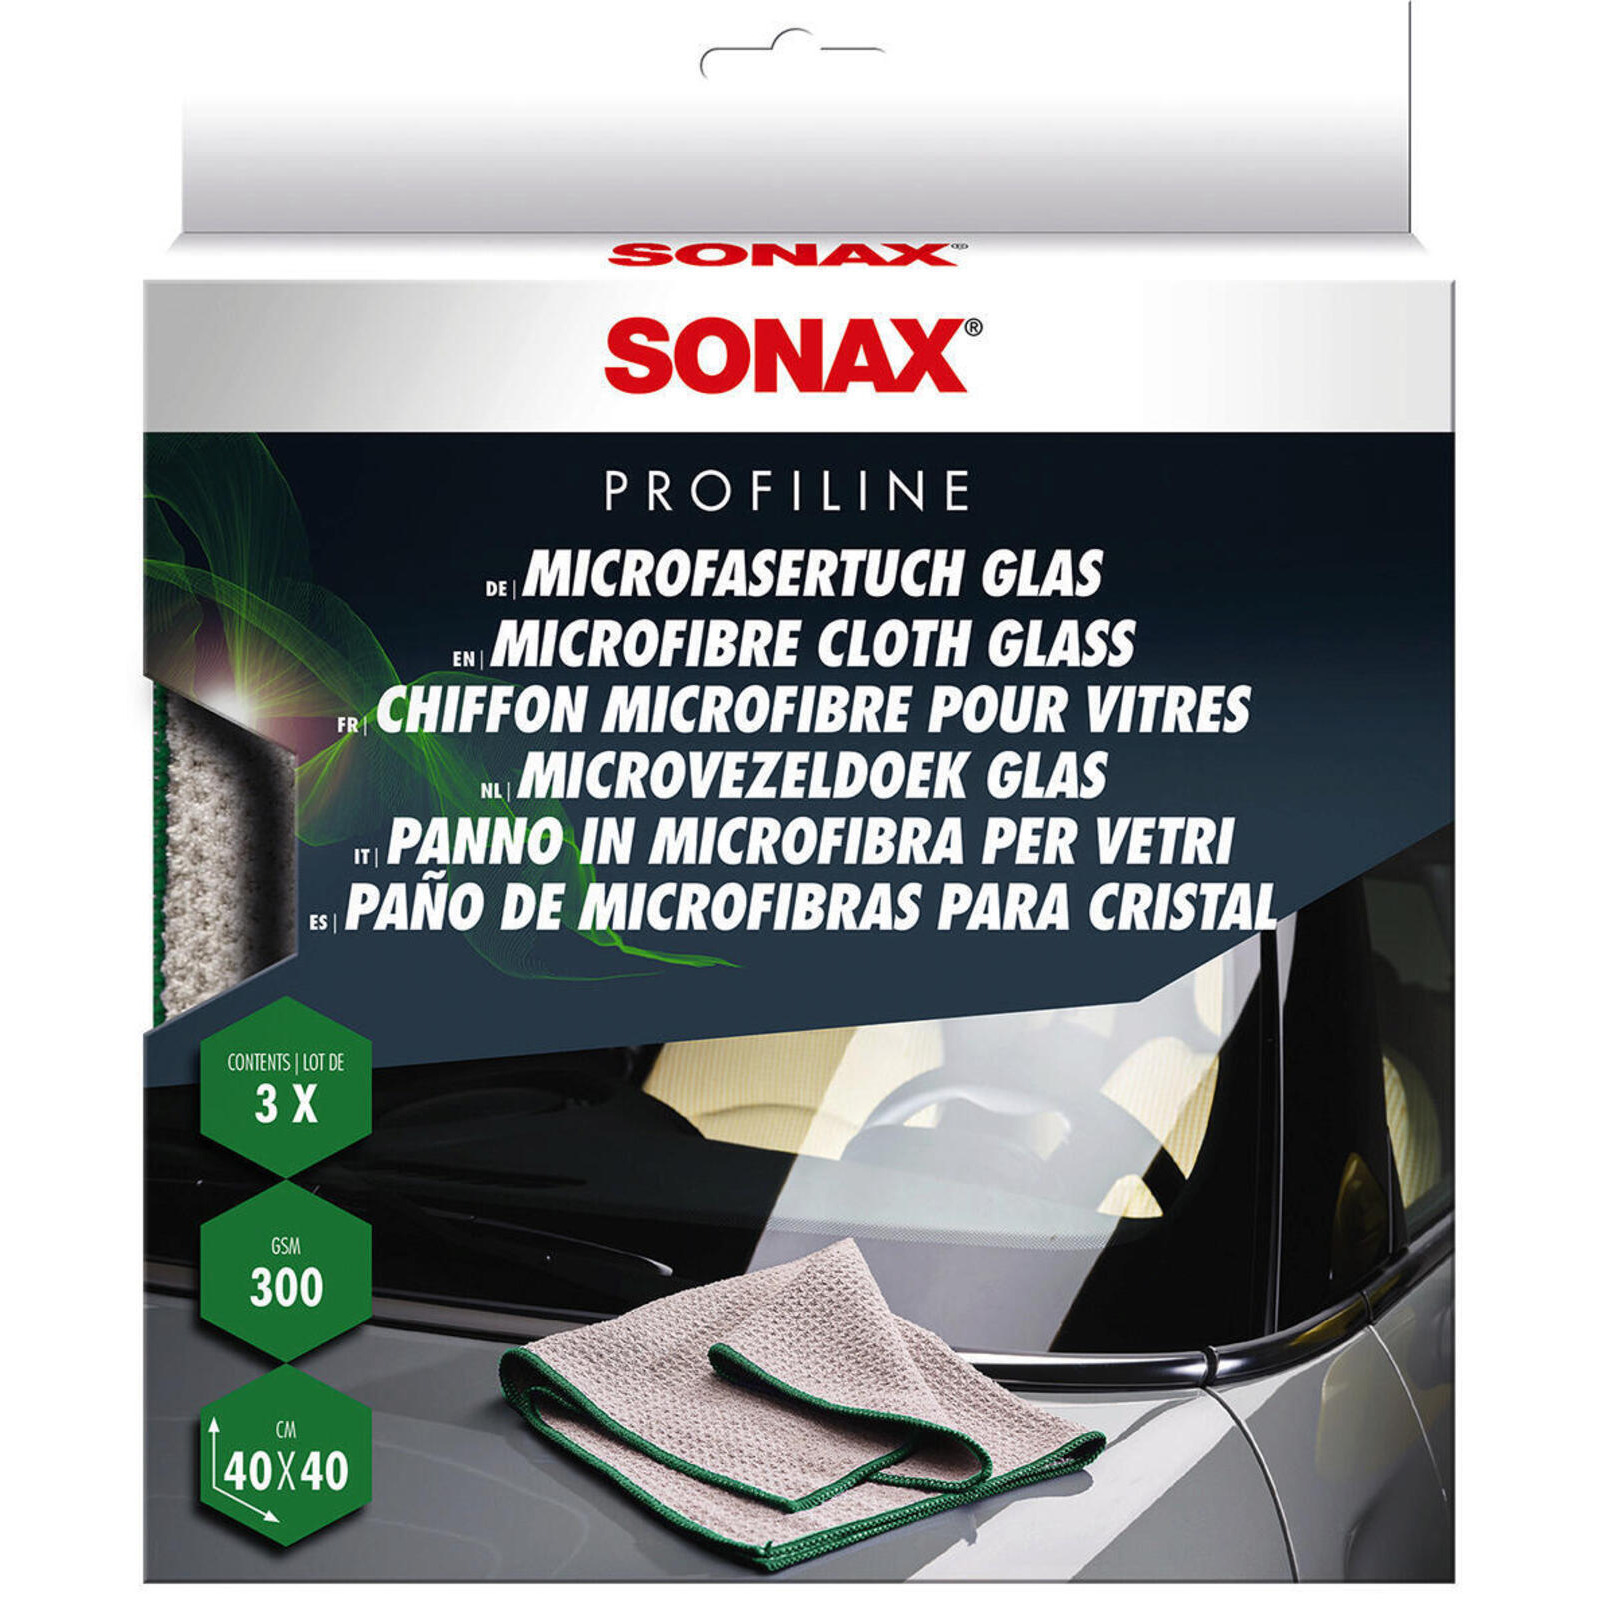 SONAX Reinigungstücher MicrofaserTuch Glas